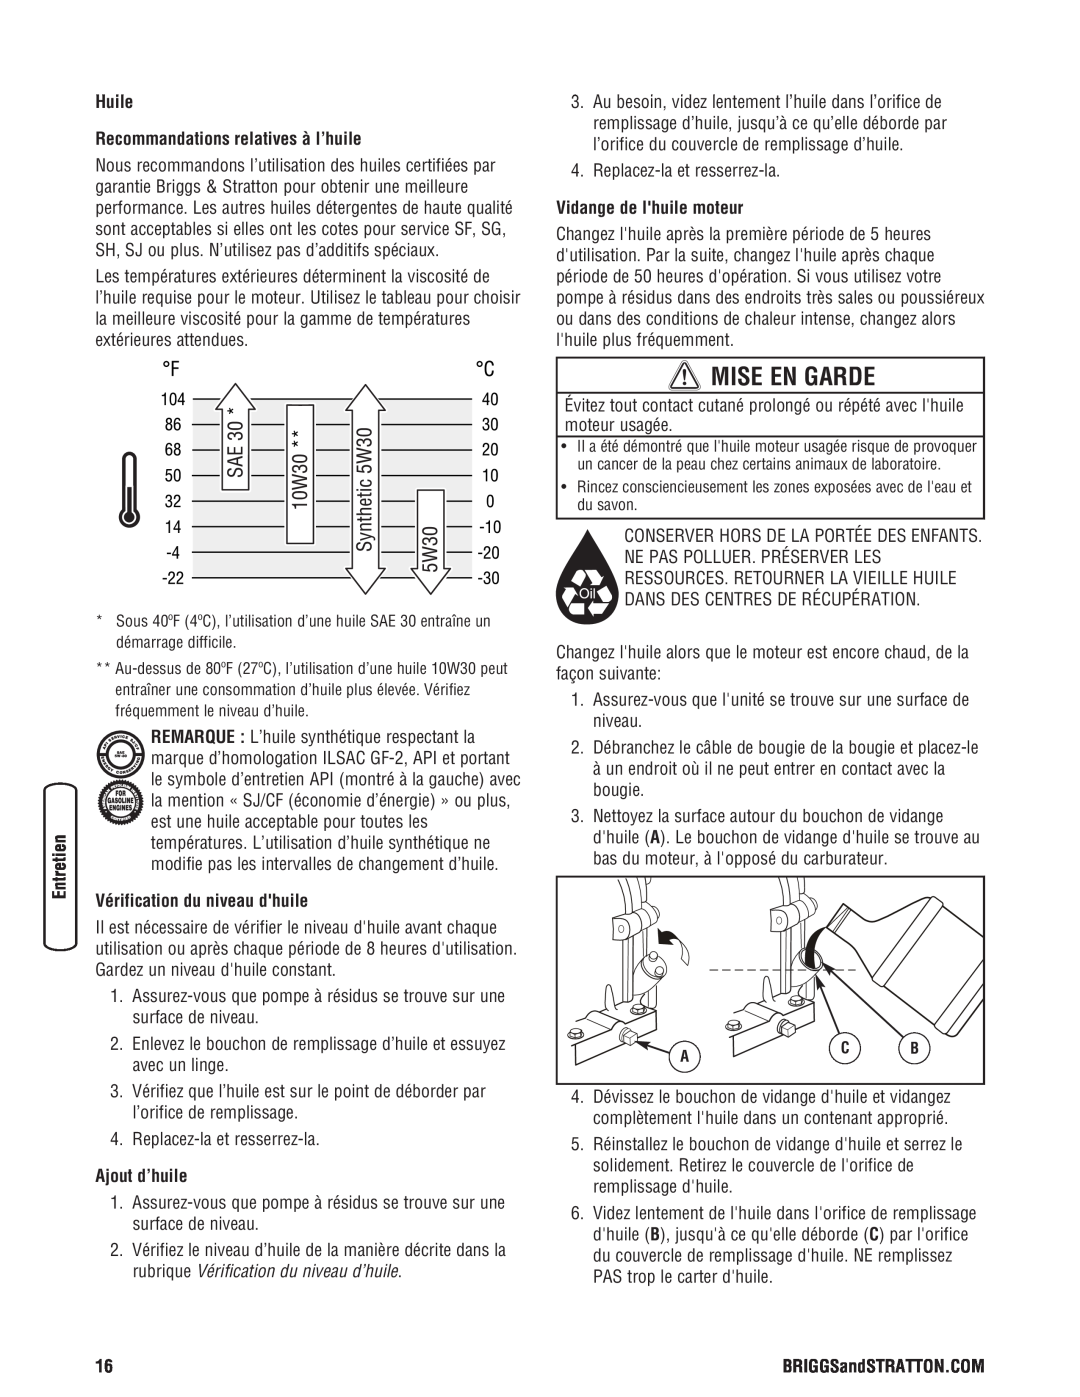 Briggs & Stratton 205378GS manual Huile Recommandations relatives à l’huile, Vérification du niveau dhuile, Ajout d’huile 